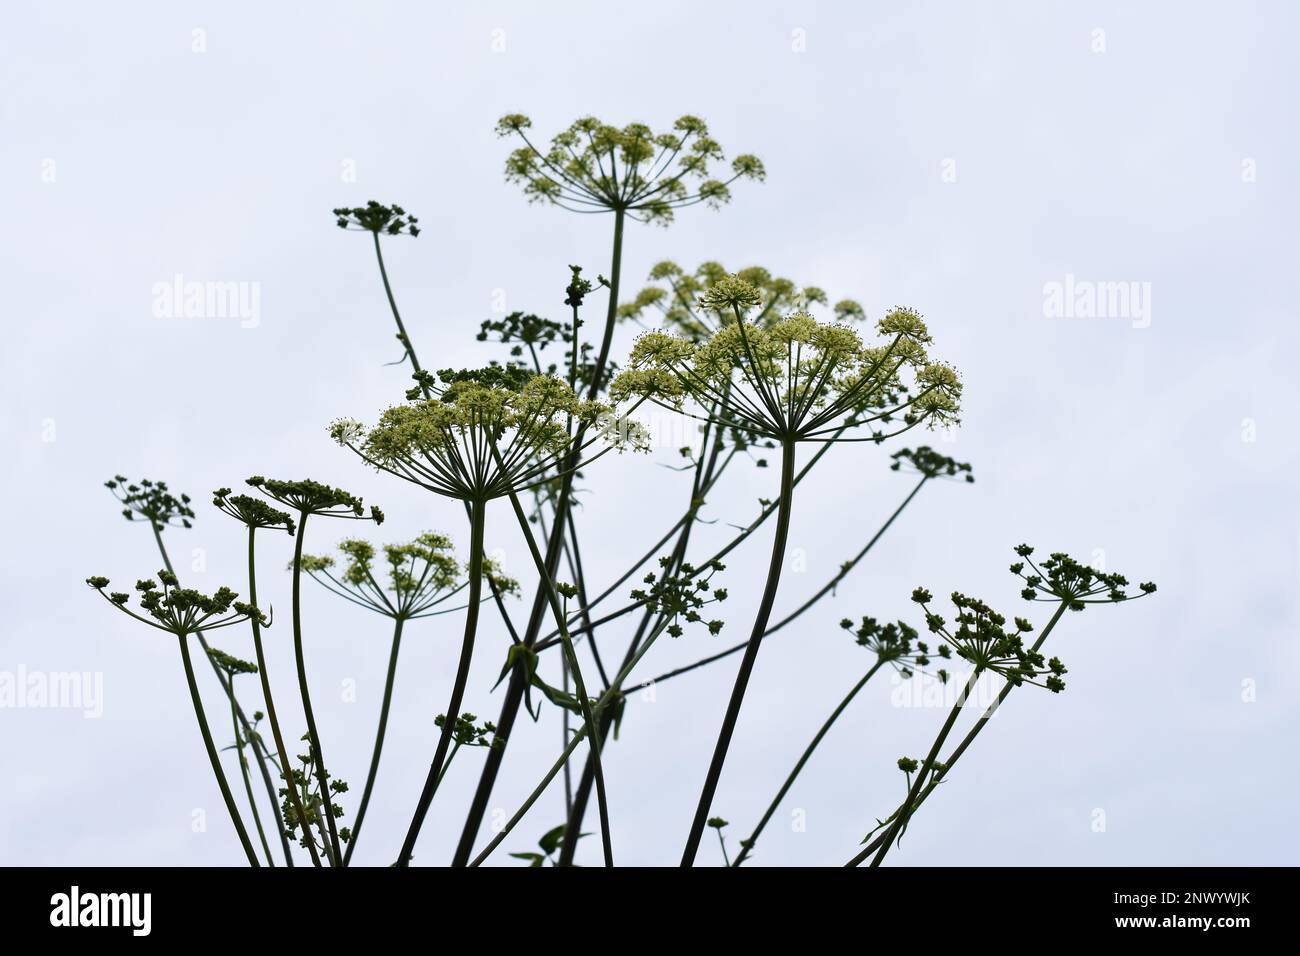 les gousses de semences d'une plante ombellifère vues contre un ciel gris Banque D'Images